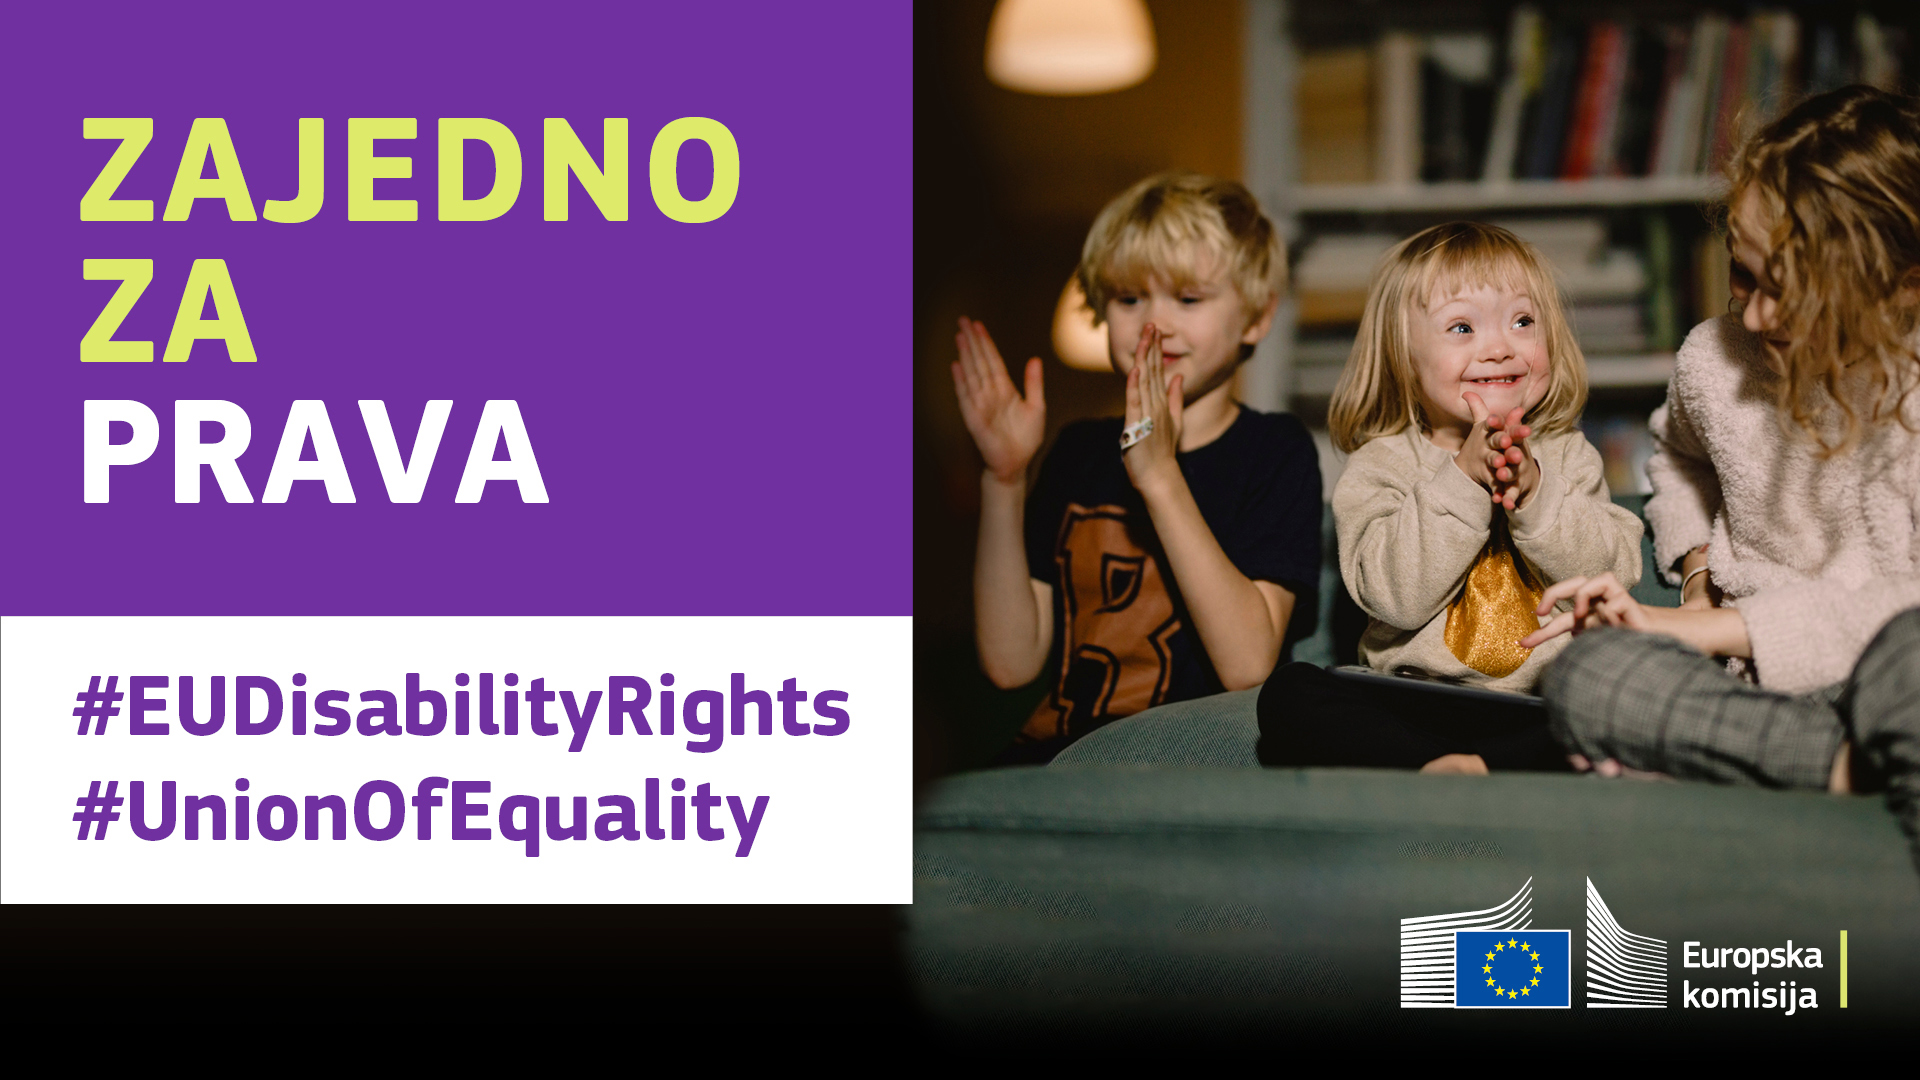 Tri djeteta veselo se igraju. Jedno od njih ima sindrom Down. Tekst: zajedno za prava, #EUDisabilityRights, #UnionOfEquality.